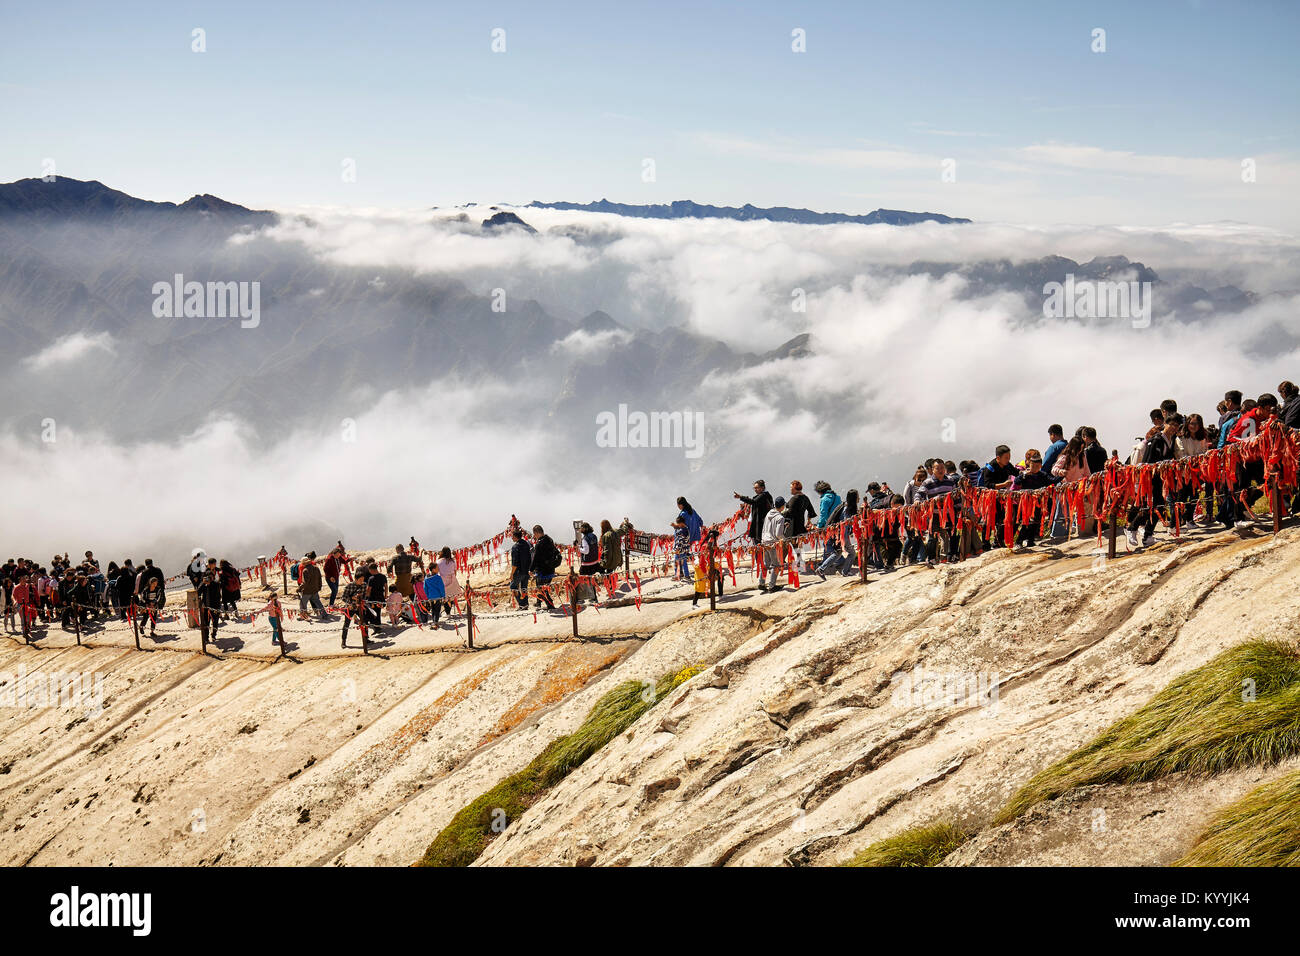 Mount Hua, Provinz Shaanxi, China - Oktober 06, 2017: Touristen, die in die Warteschlange Huashan Berg klettern. Stockfoto